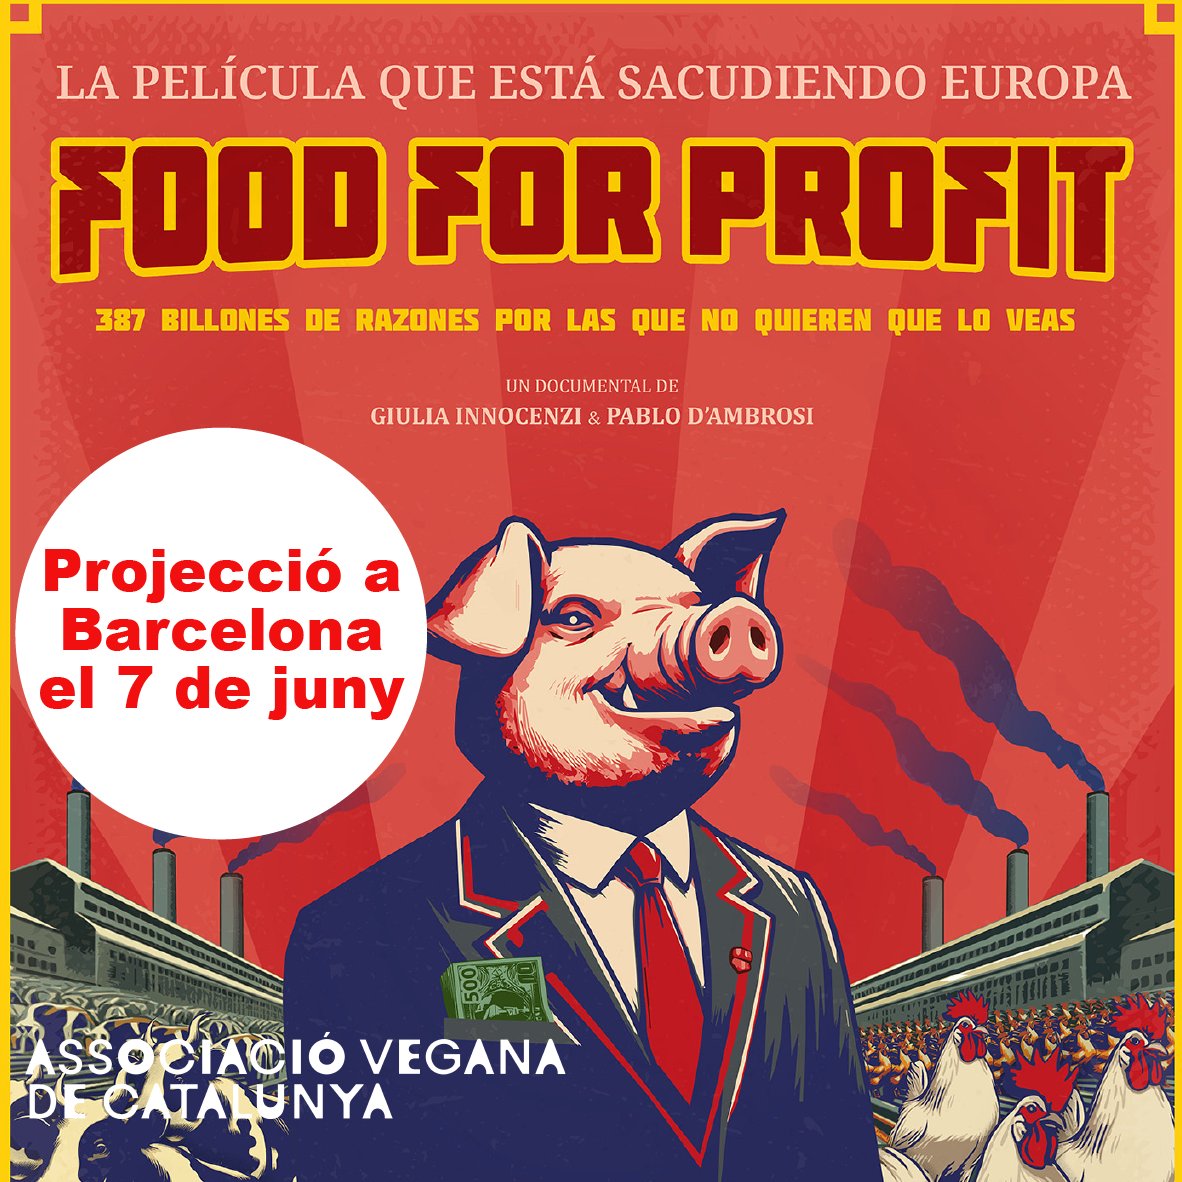 El documental “Food for Profit” arriba a Barcelona! Després d’impactar a Itàlia, arriba al cinemes el 7 de juny. 

@giuliainnocenzi @foodforprofit_ 

👉👉👉associacioveganacatalunya.org/food-for-profi…